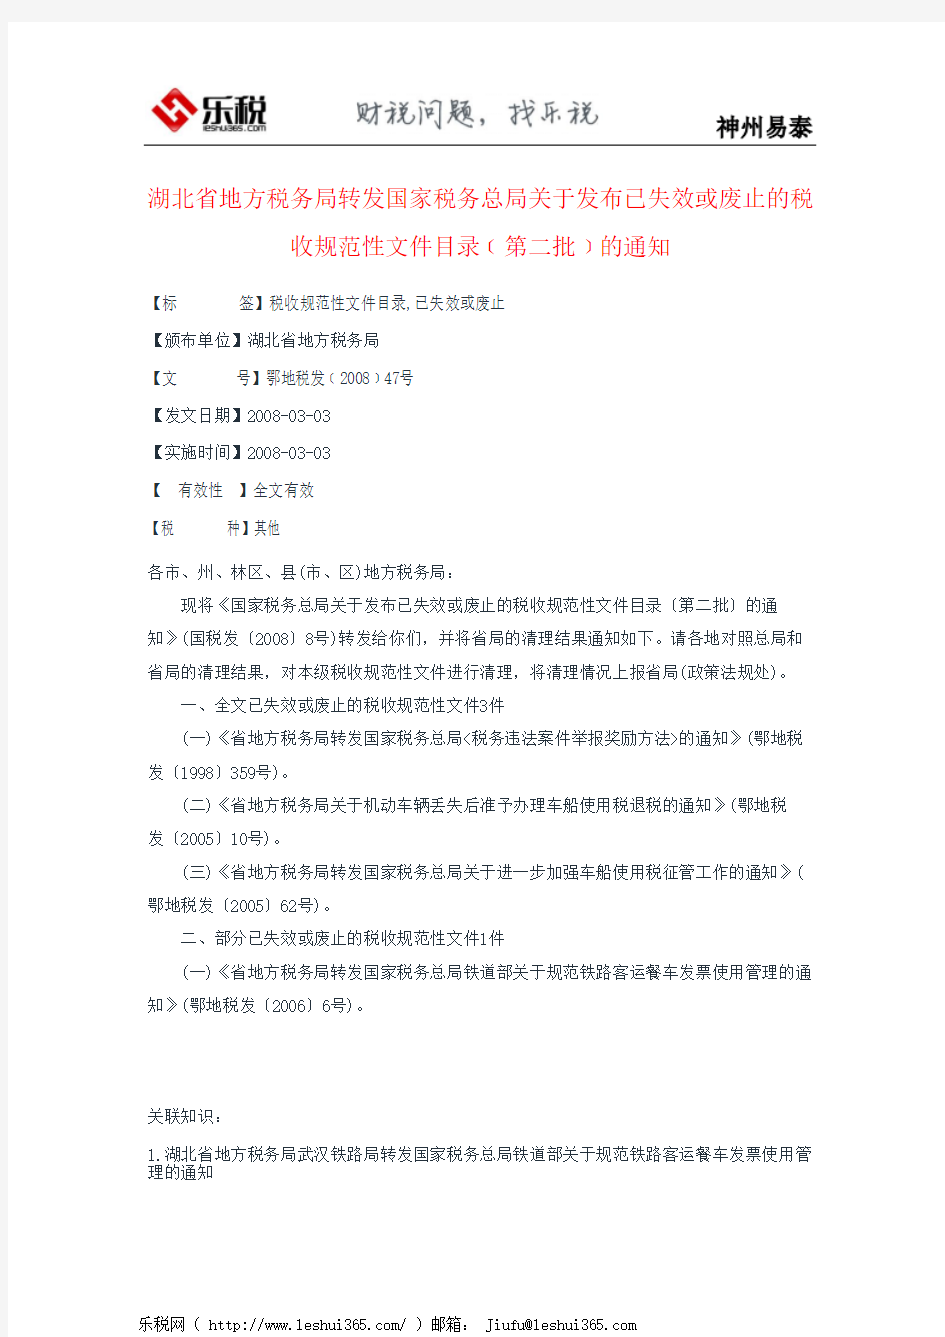 湖北省地方税务局转发国家税务总局关于发布已失效或废止的税收规